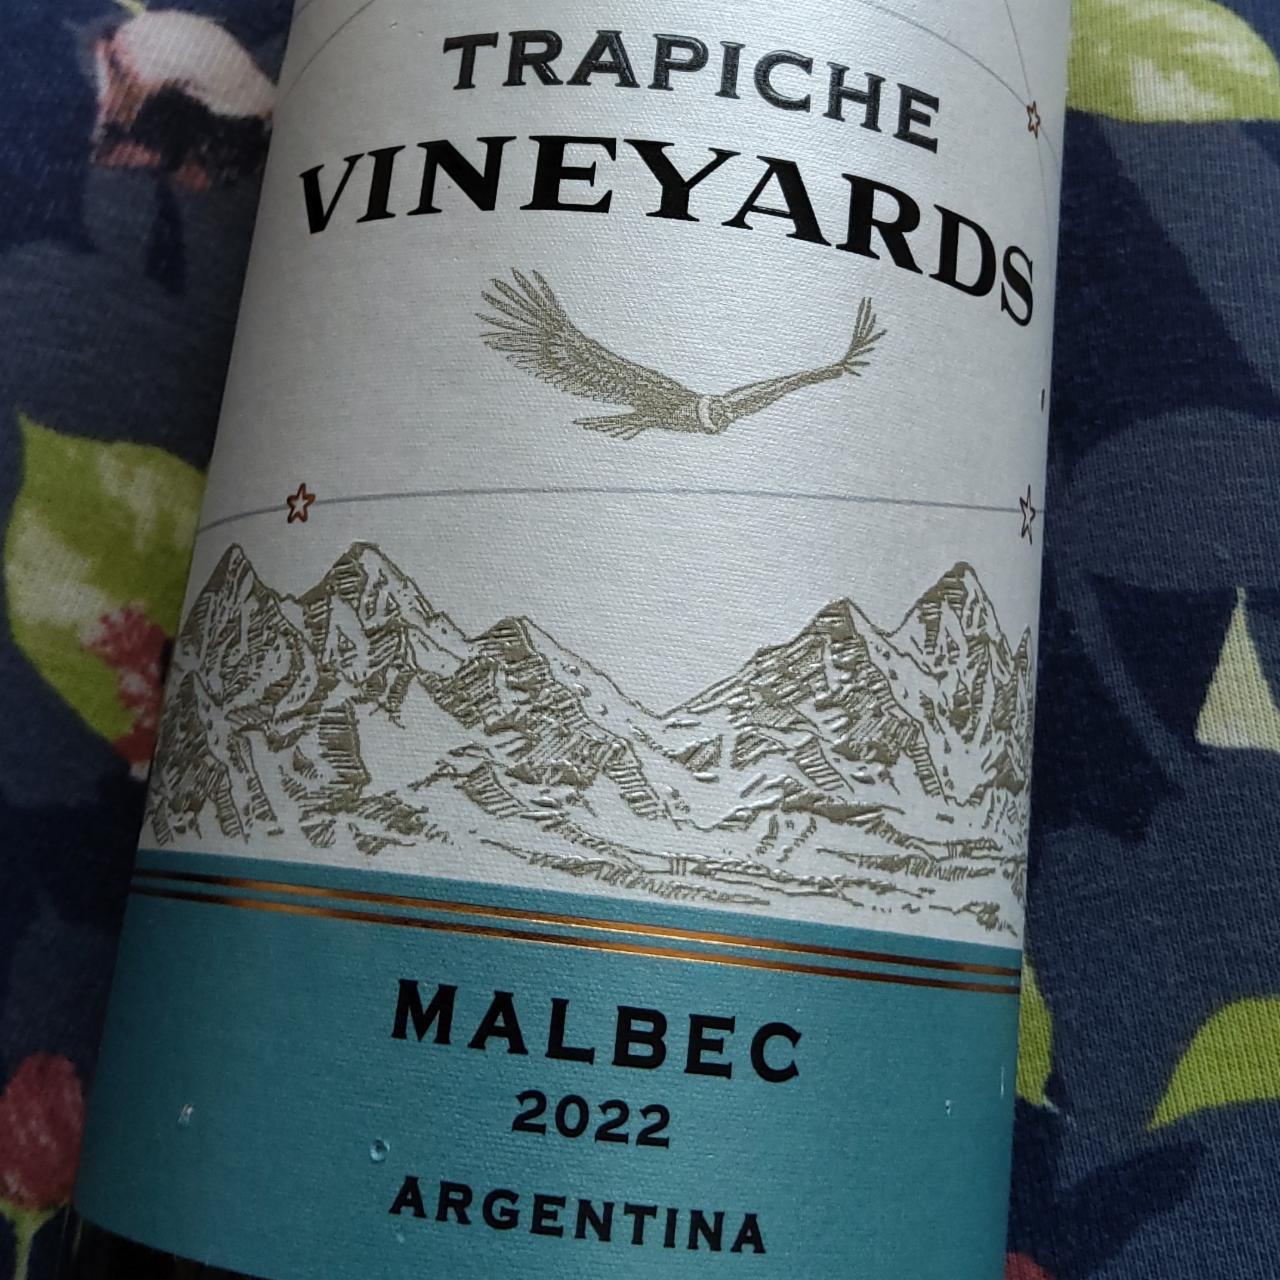 Fotografie - Malbec Argentina 2021 (2022) Vineyards Trapiche